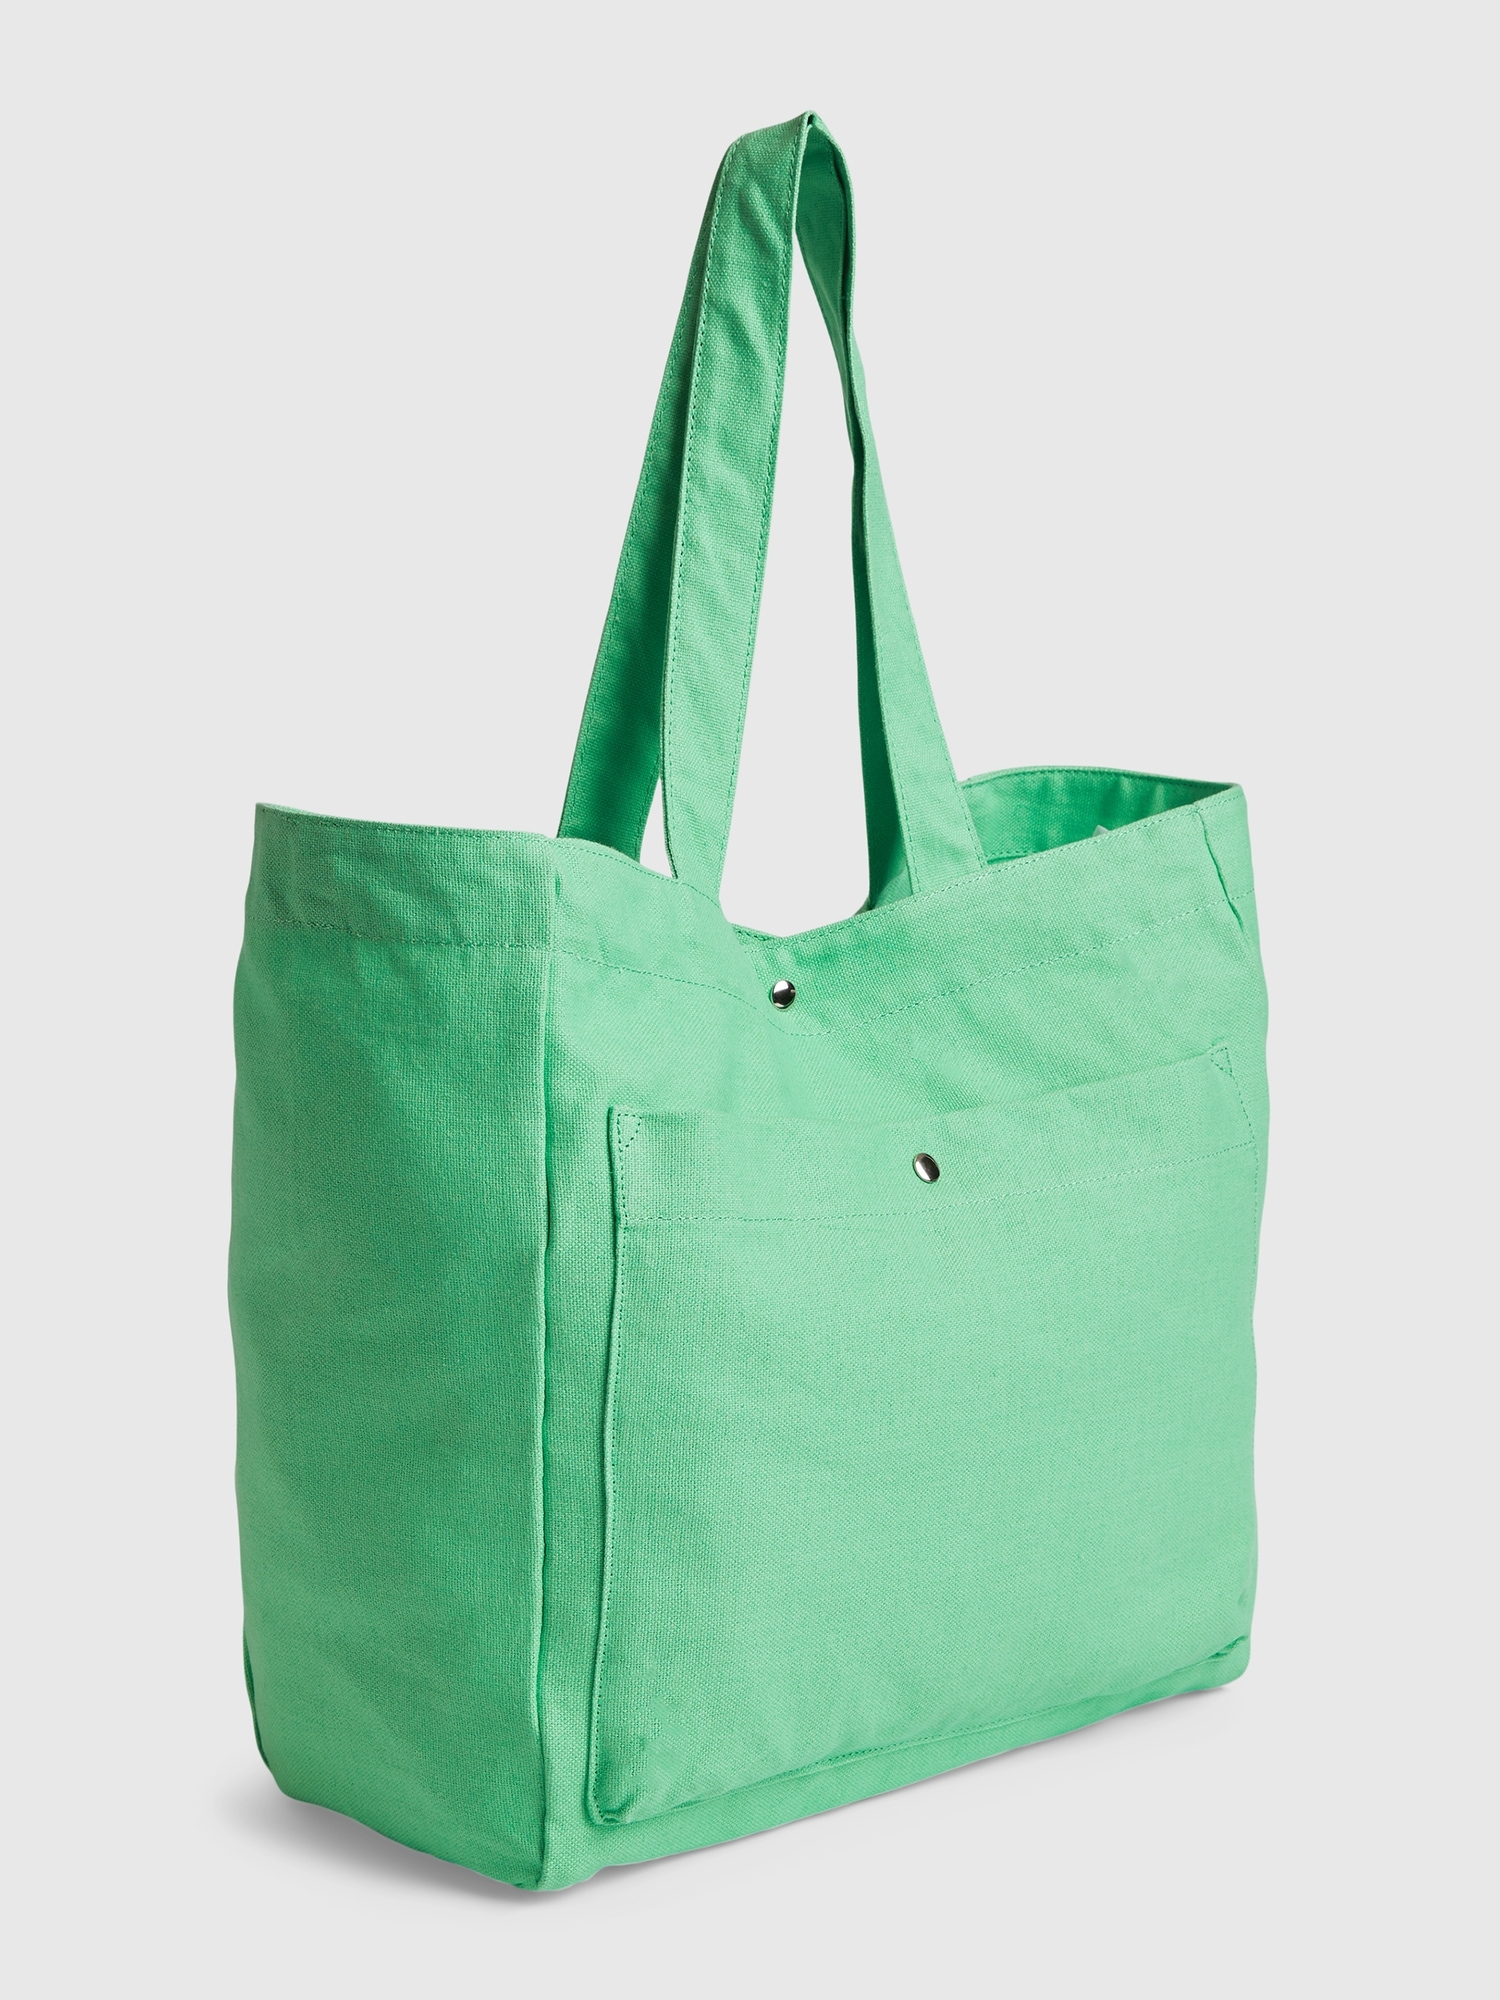 Gap Tote Bag green. 1